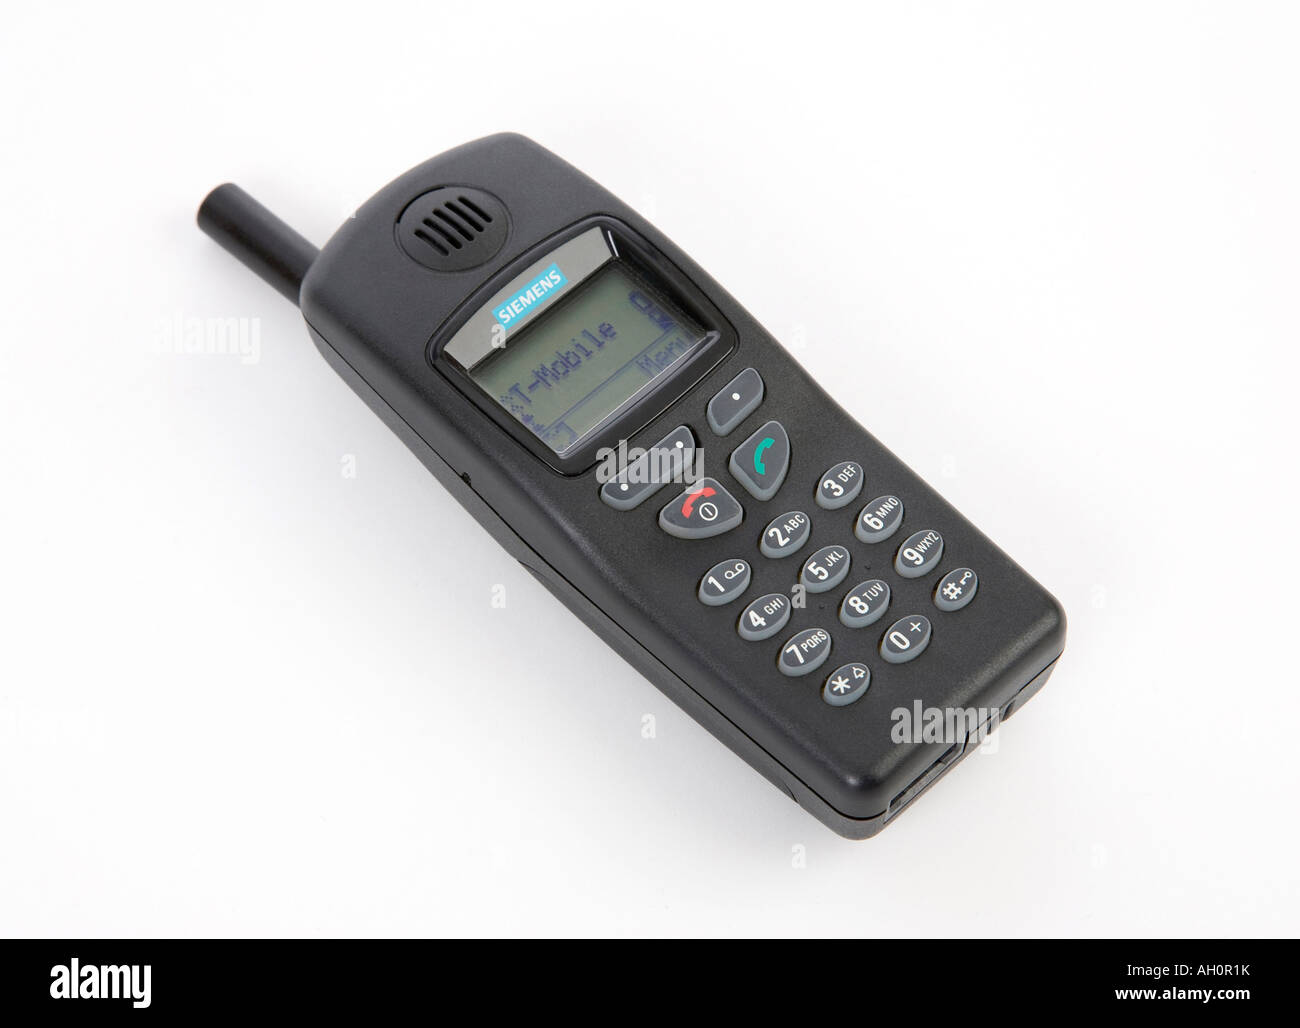 Siemens C25 telefono cellulare da intorno all'anno 2001 Foto Stock